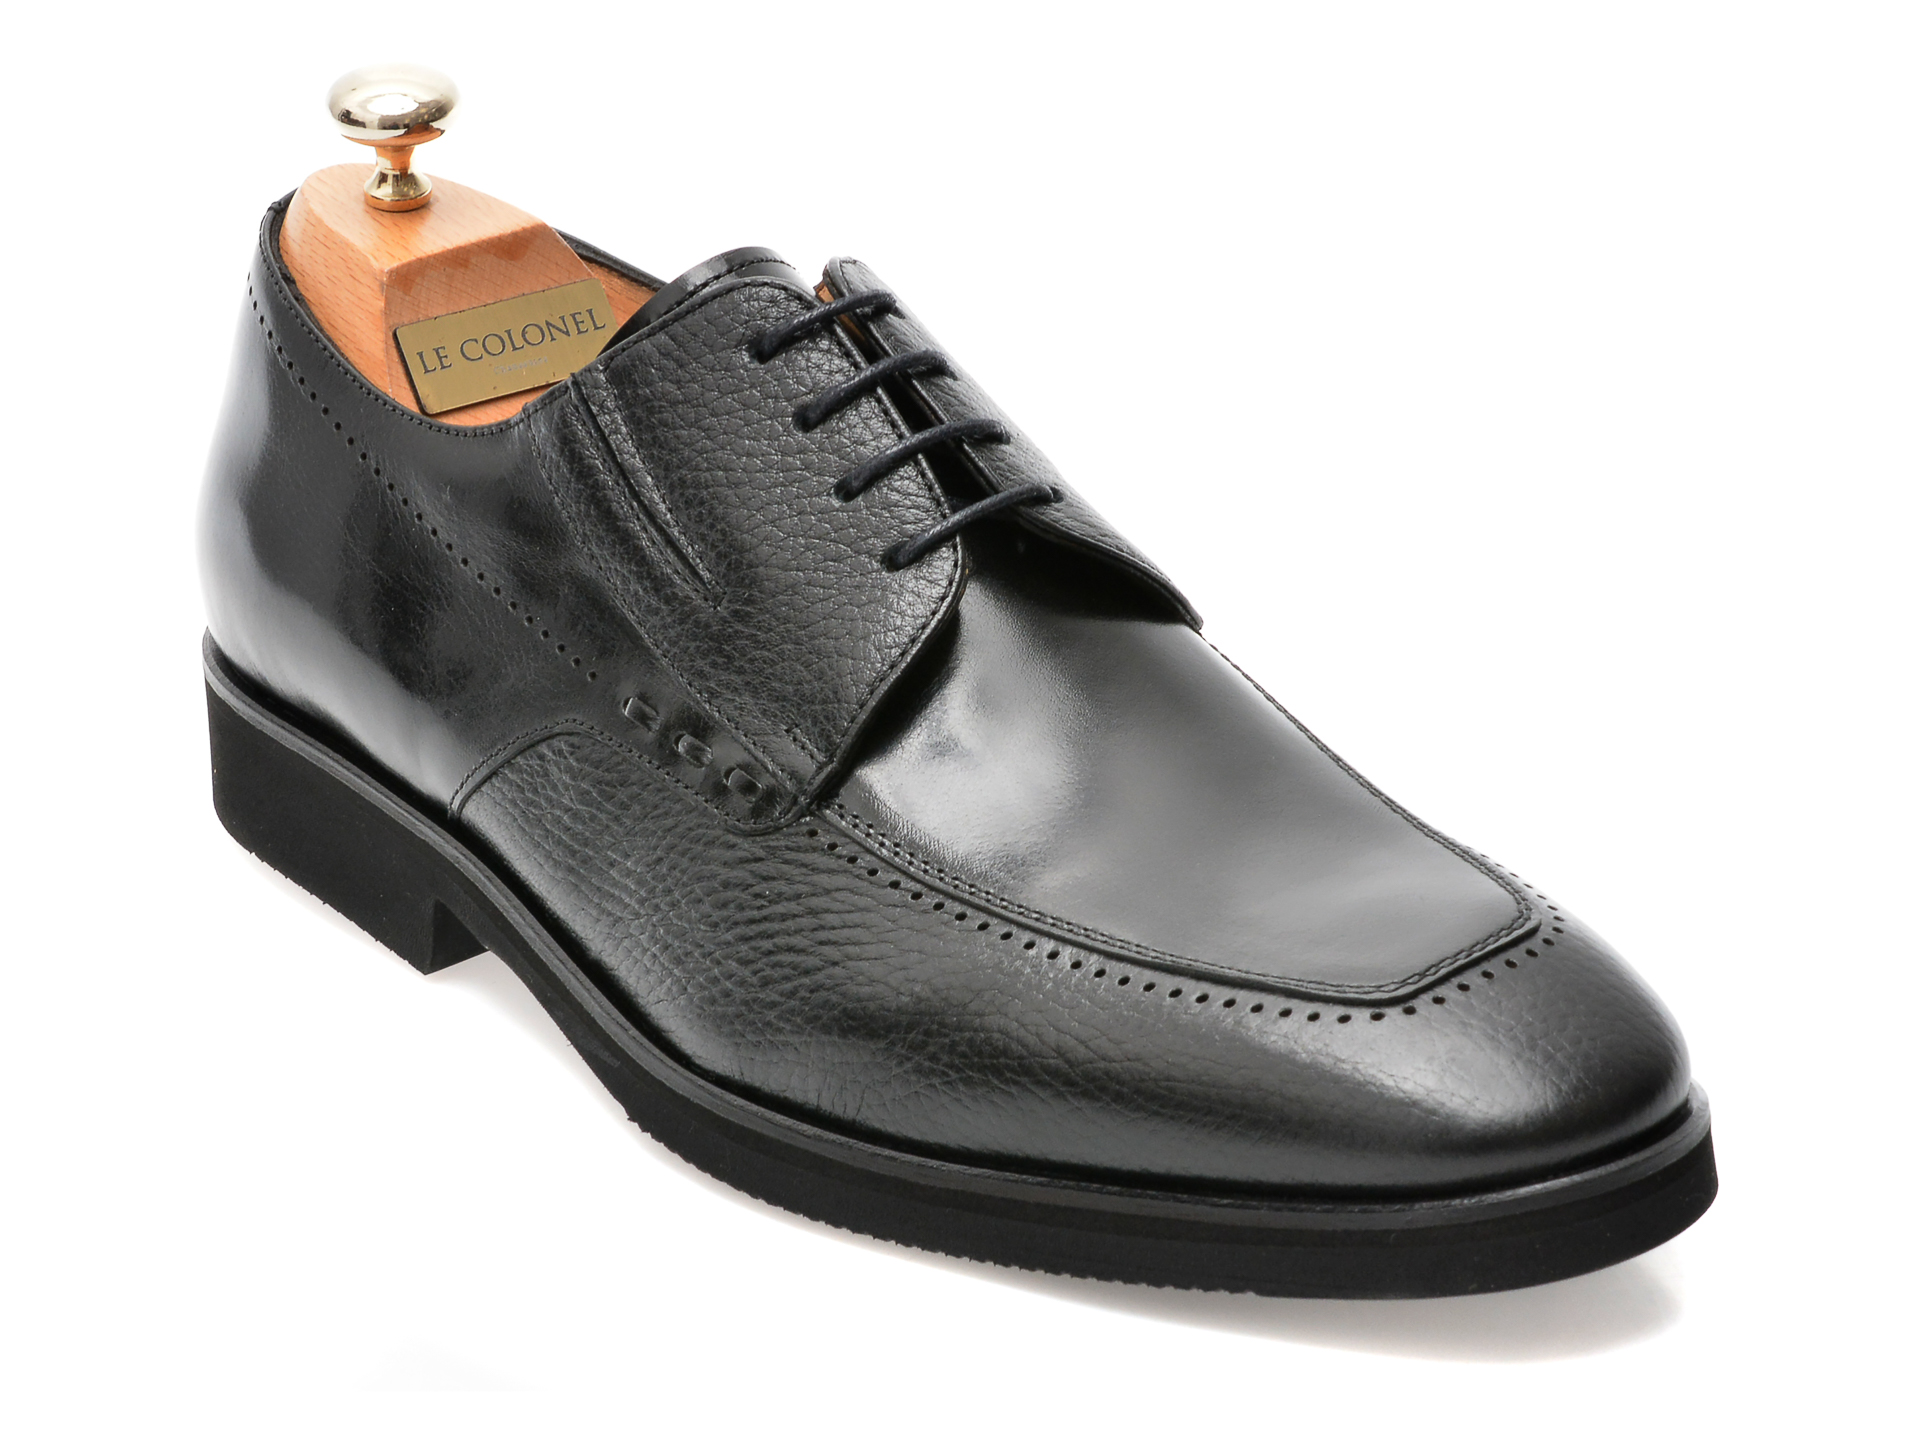 Pantofi LE COLONEL negri, 48701, din piele naturala Le Colonel